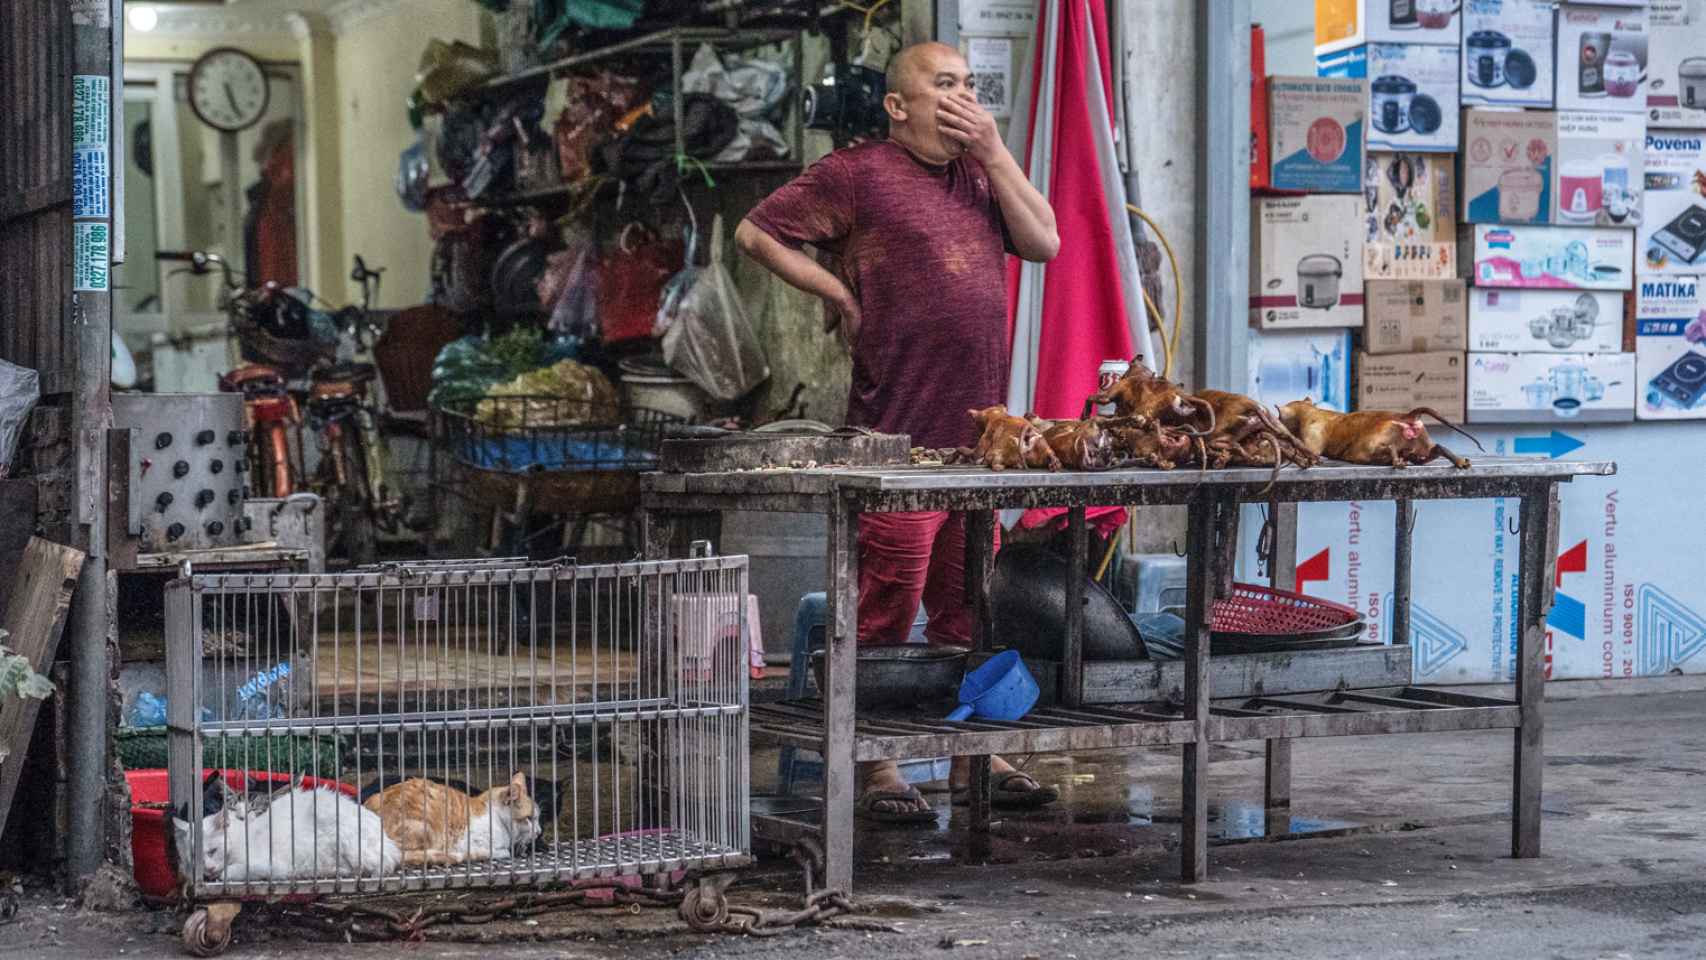 Gatos vivos aguardan a ser sacrificados junto a felinos asados en un puesto callejero vietnamita.